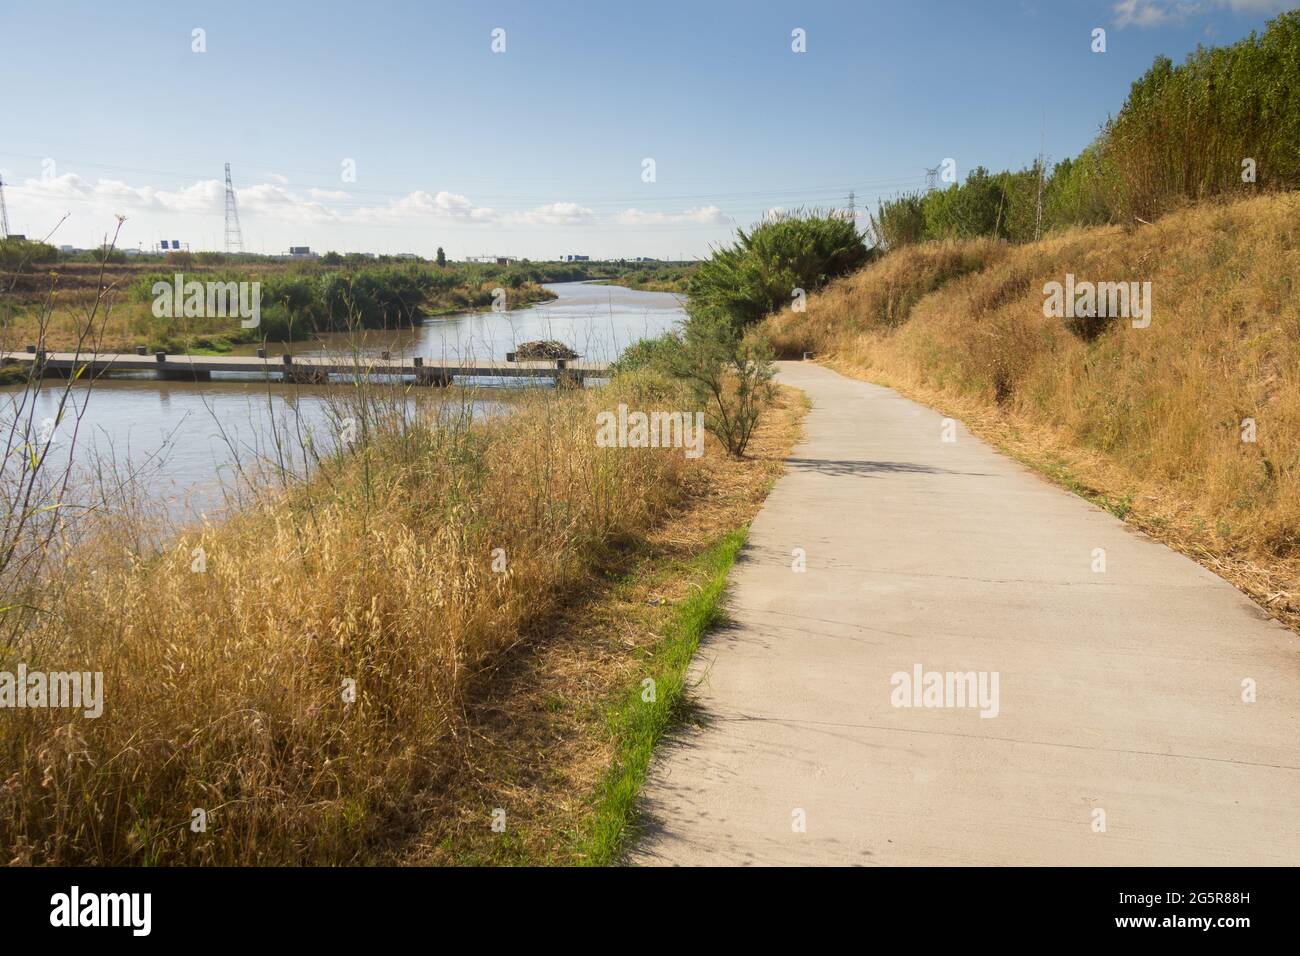 Sentieri e sentieri in montagna e vicino al fiume; sentieri per escursioni in bicicletta, a piedi, in corsa o a piedi. Foto Stock